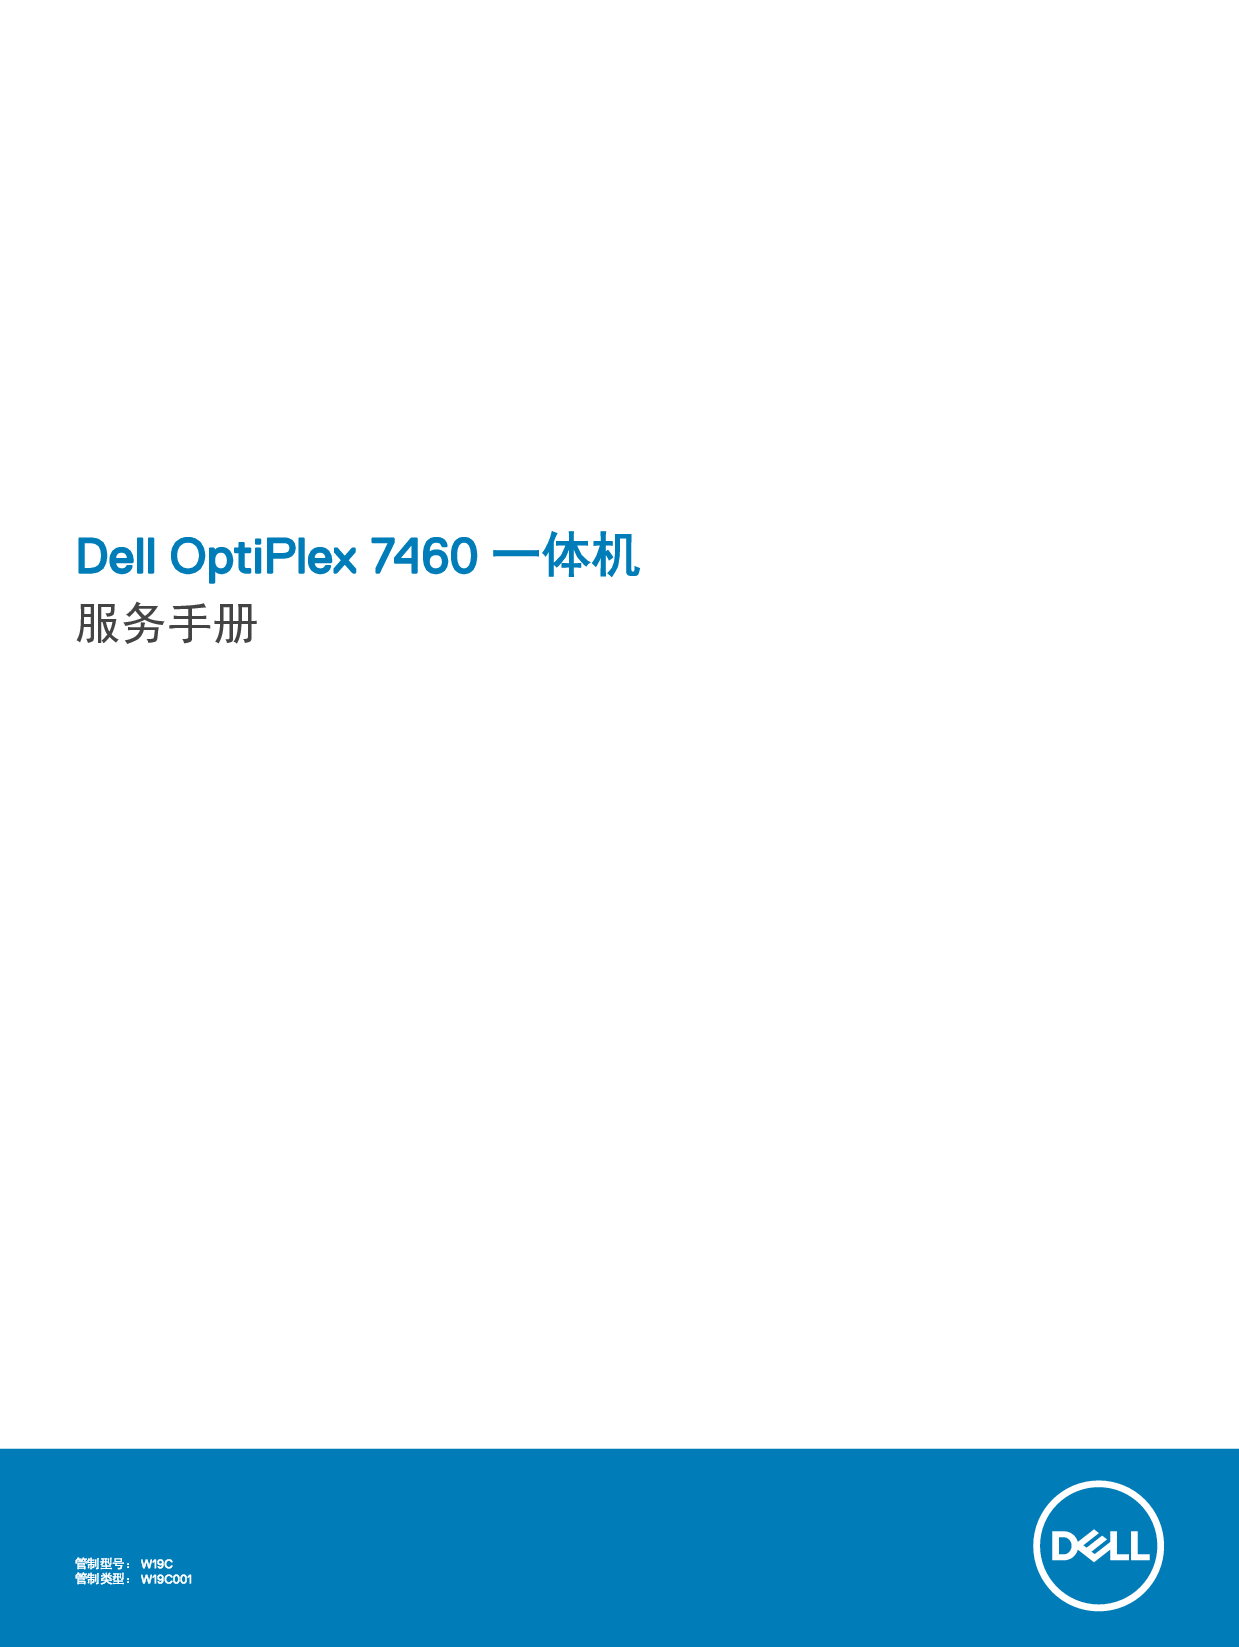 戴尔 Dell Optiplex 7460 AIO 维修服务手册 封面